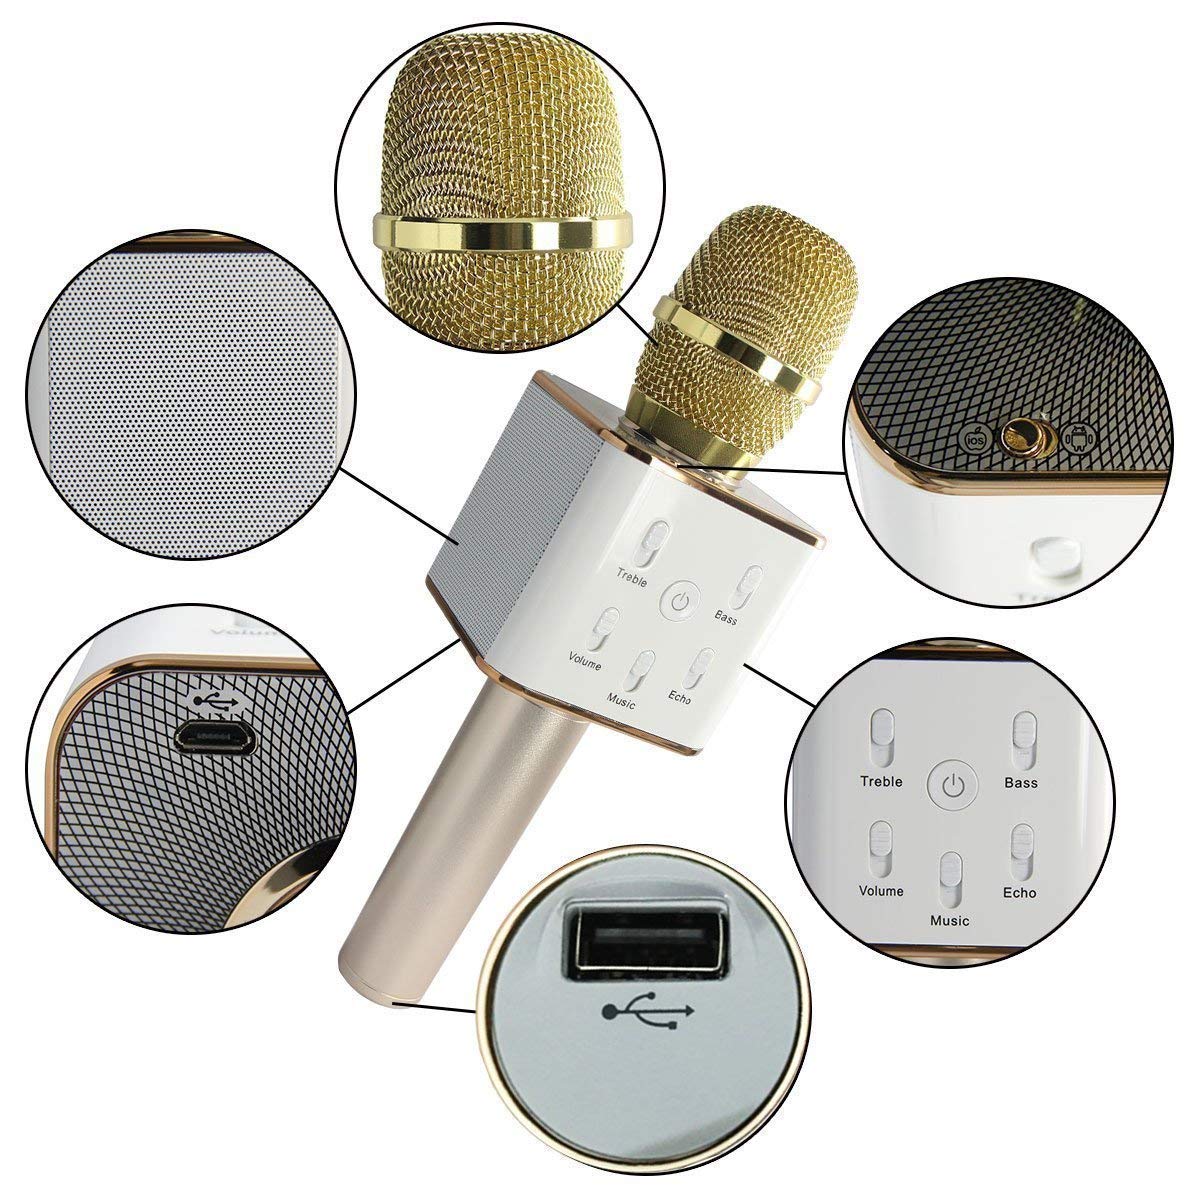 Microphone de karaoké sans fil Bluetooth - Micro rechargeable